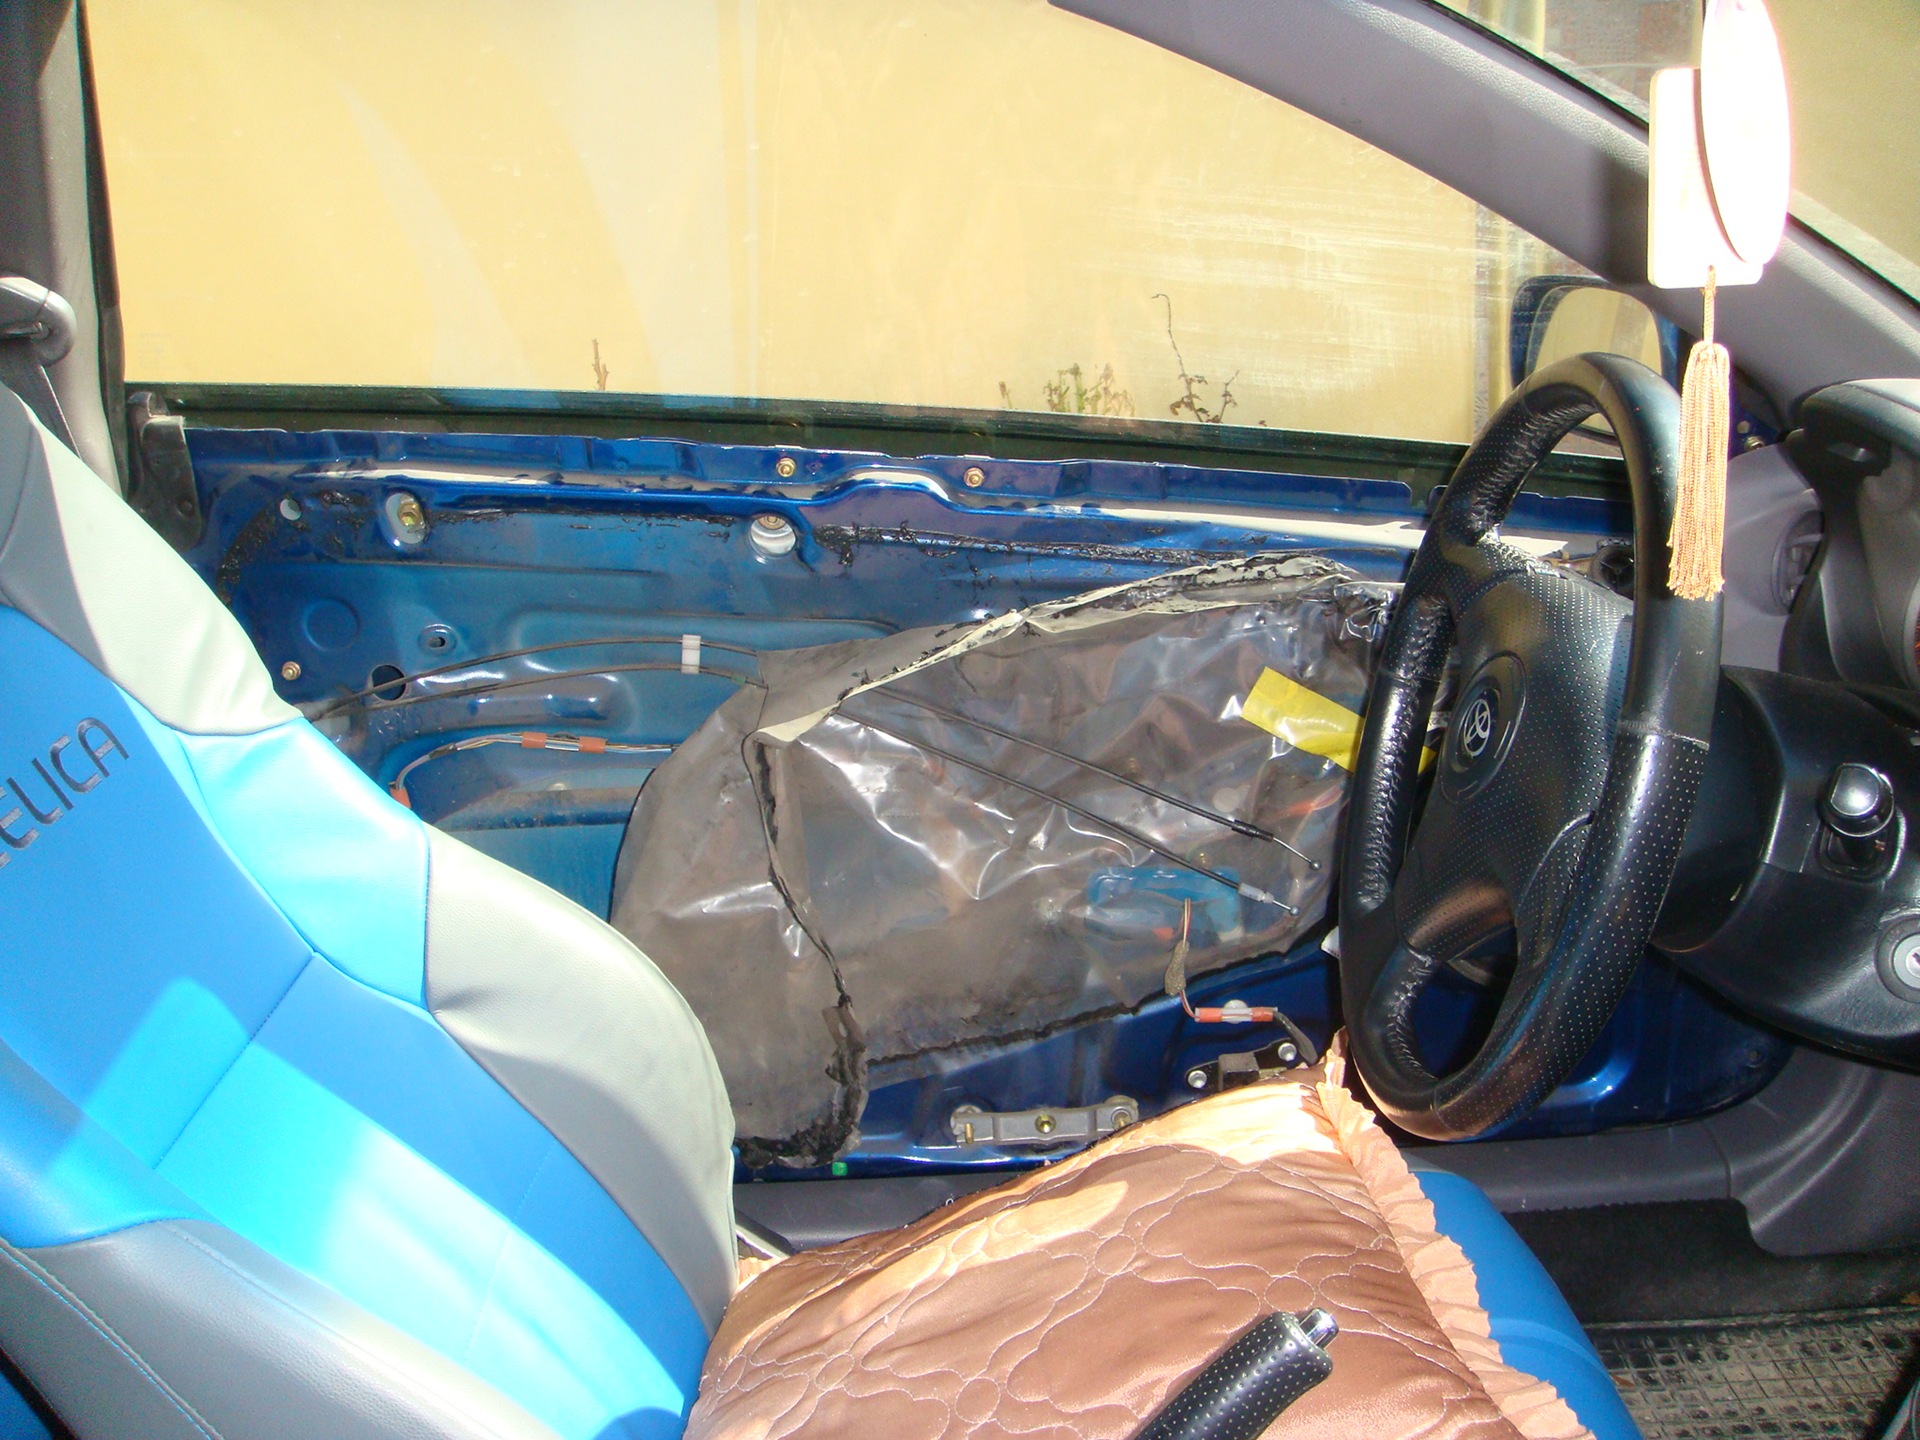 Interior trim - Toyota Celica 18 liter 2000